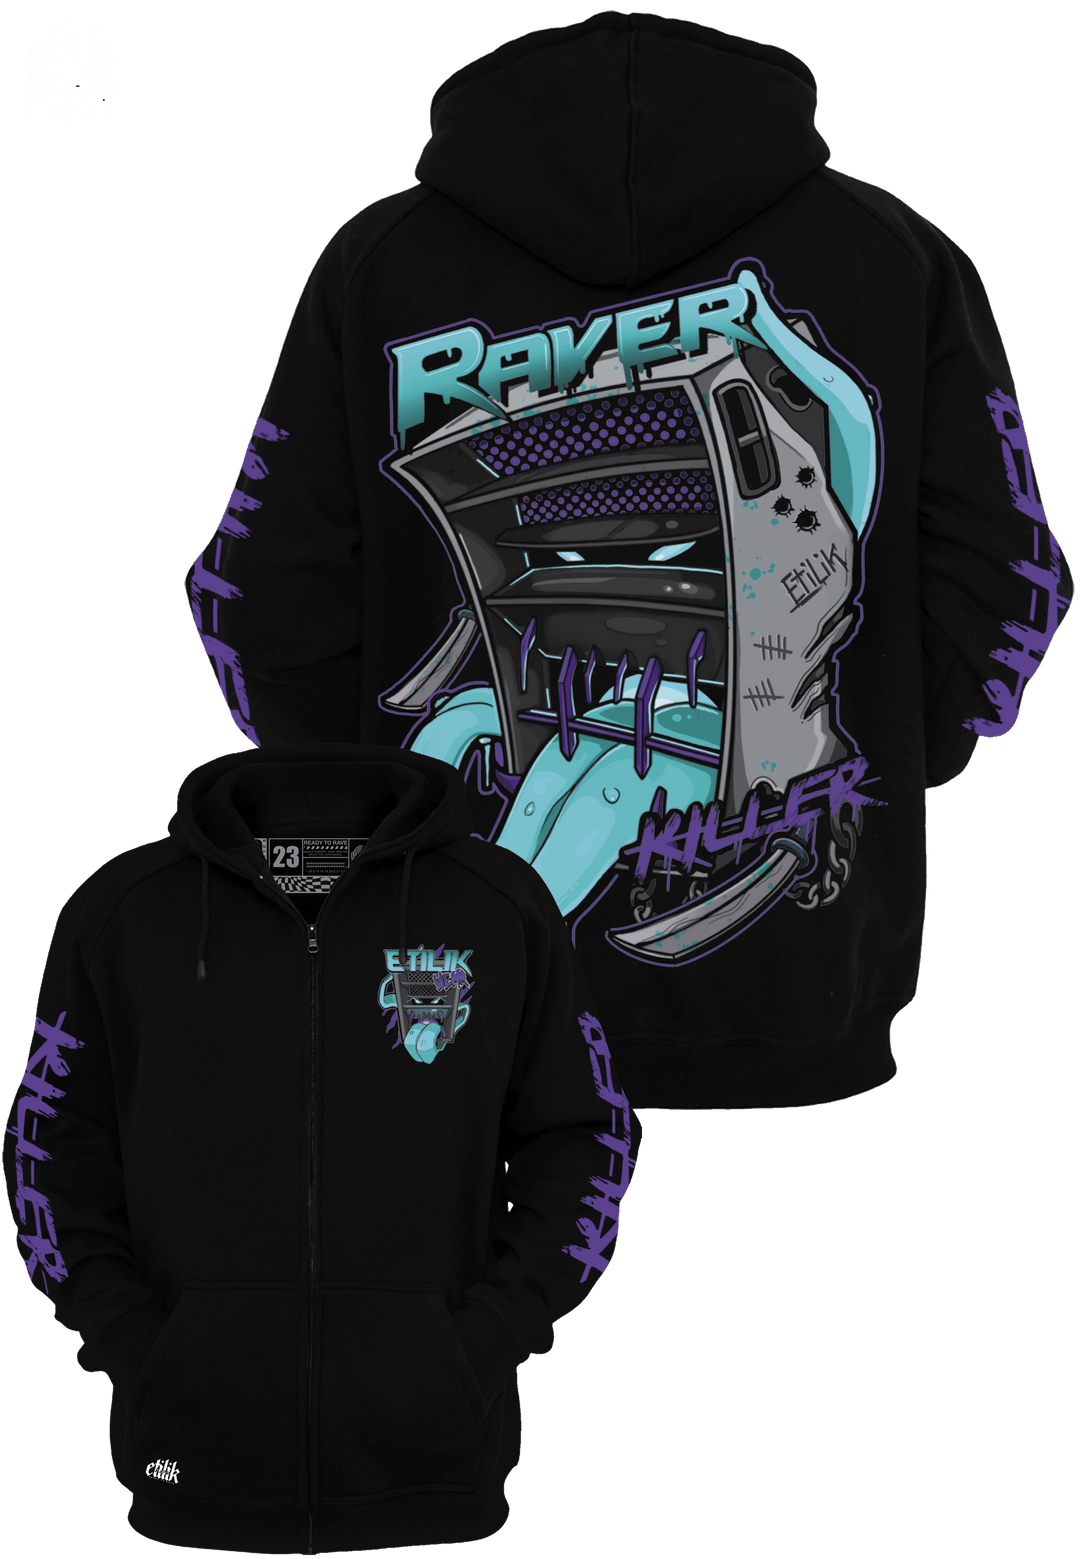 Raver Killer  - Veste - Etilik Wear 